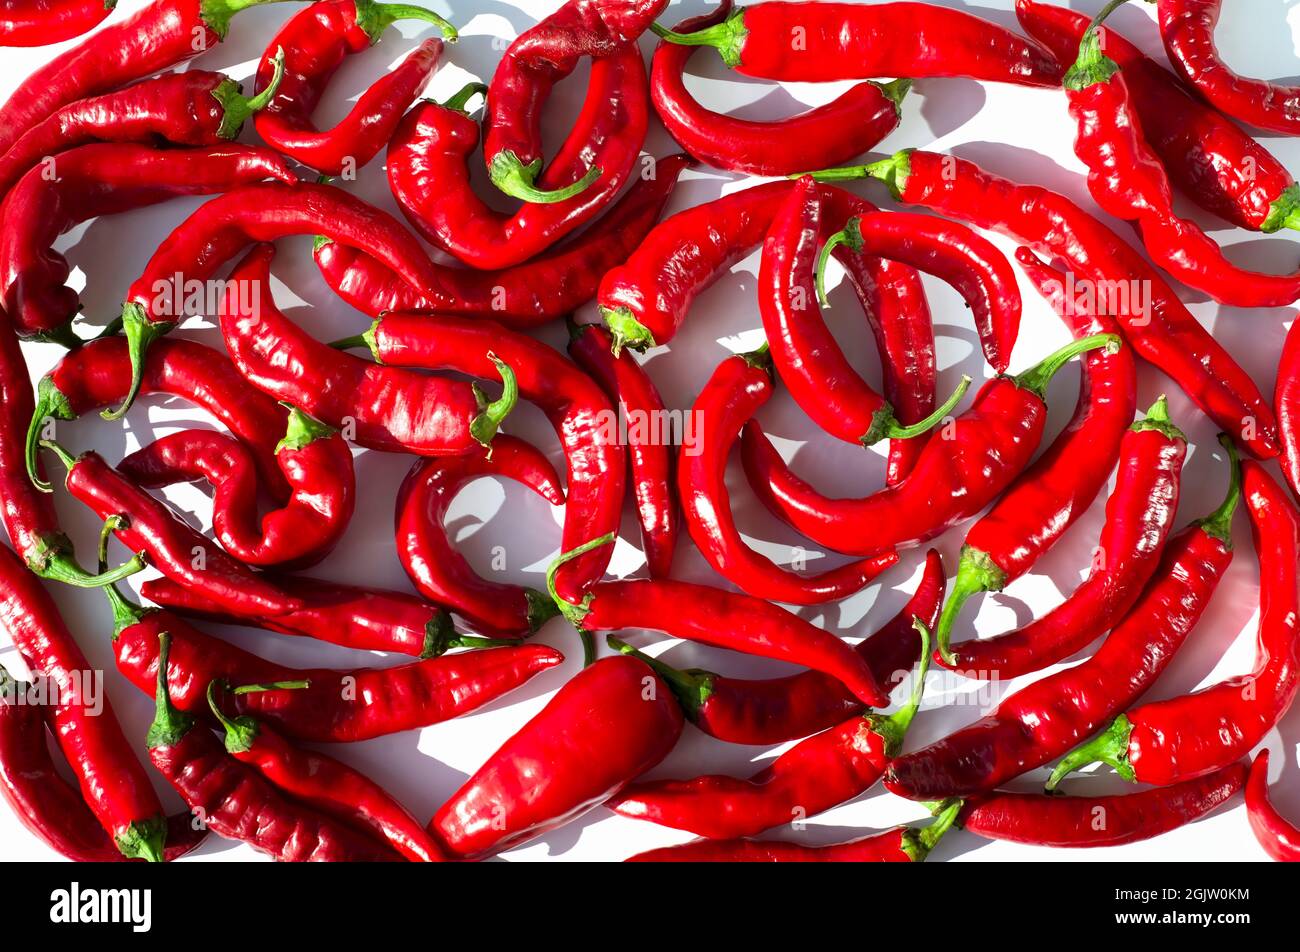 Piments rouges. Poivre de Cayenne. Arrière-plans rouges de légumes et d'épices. Banque D'Images